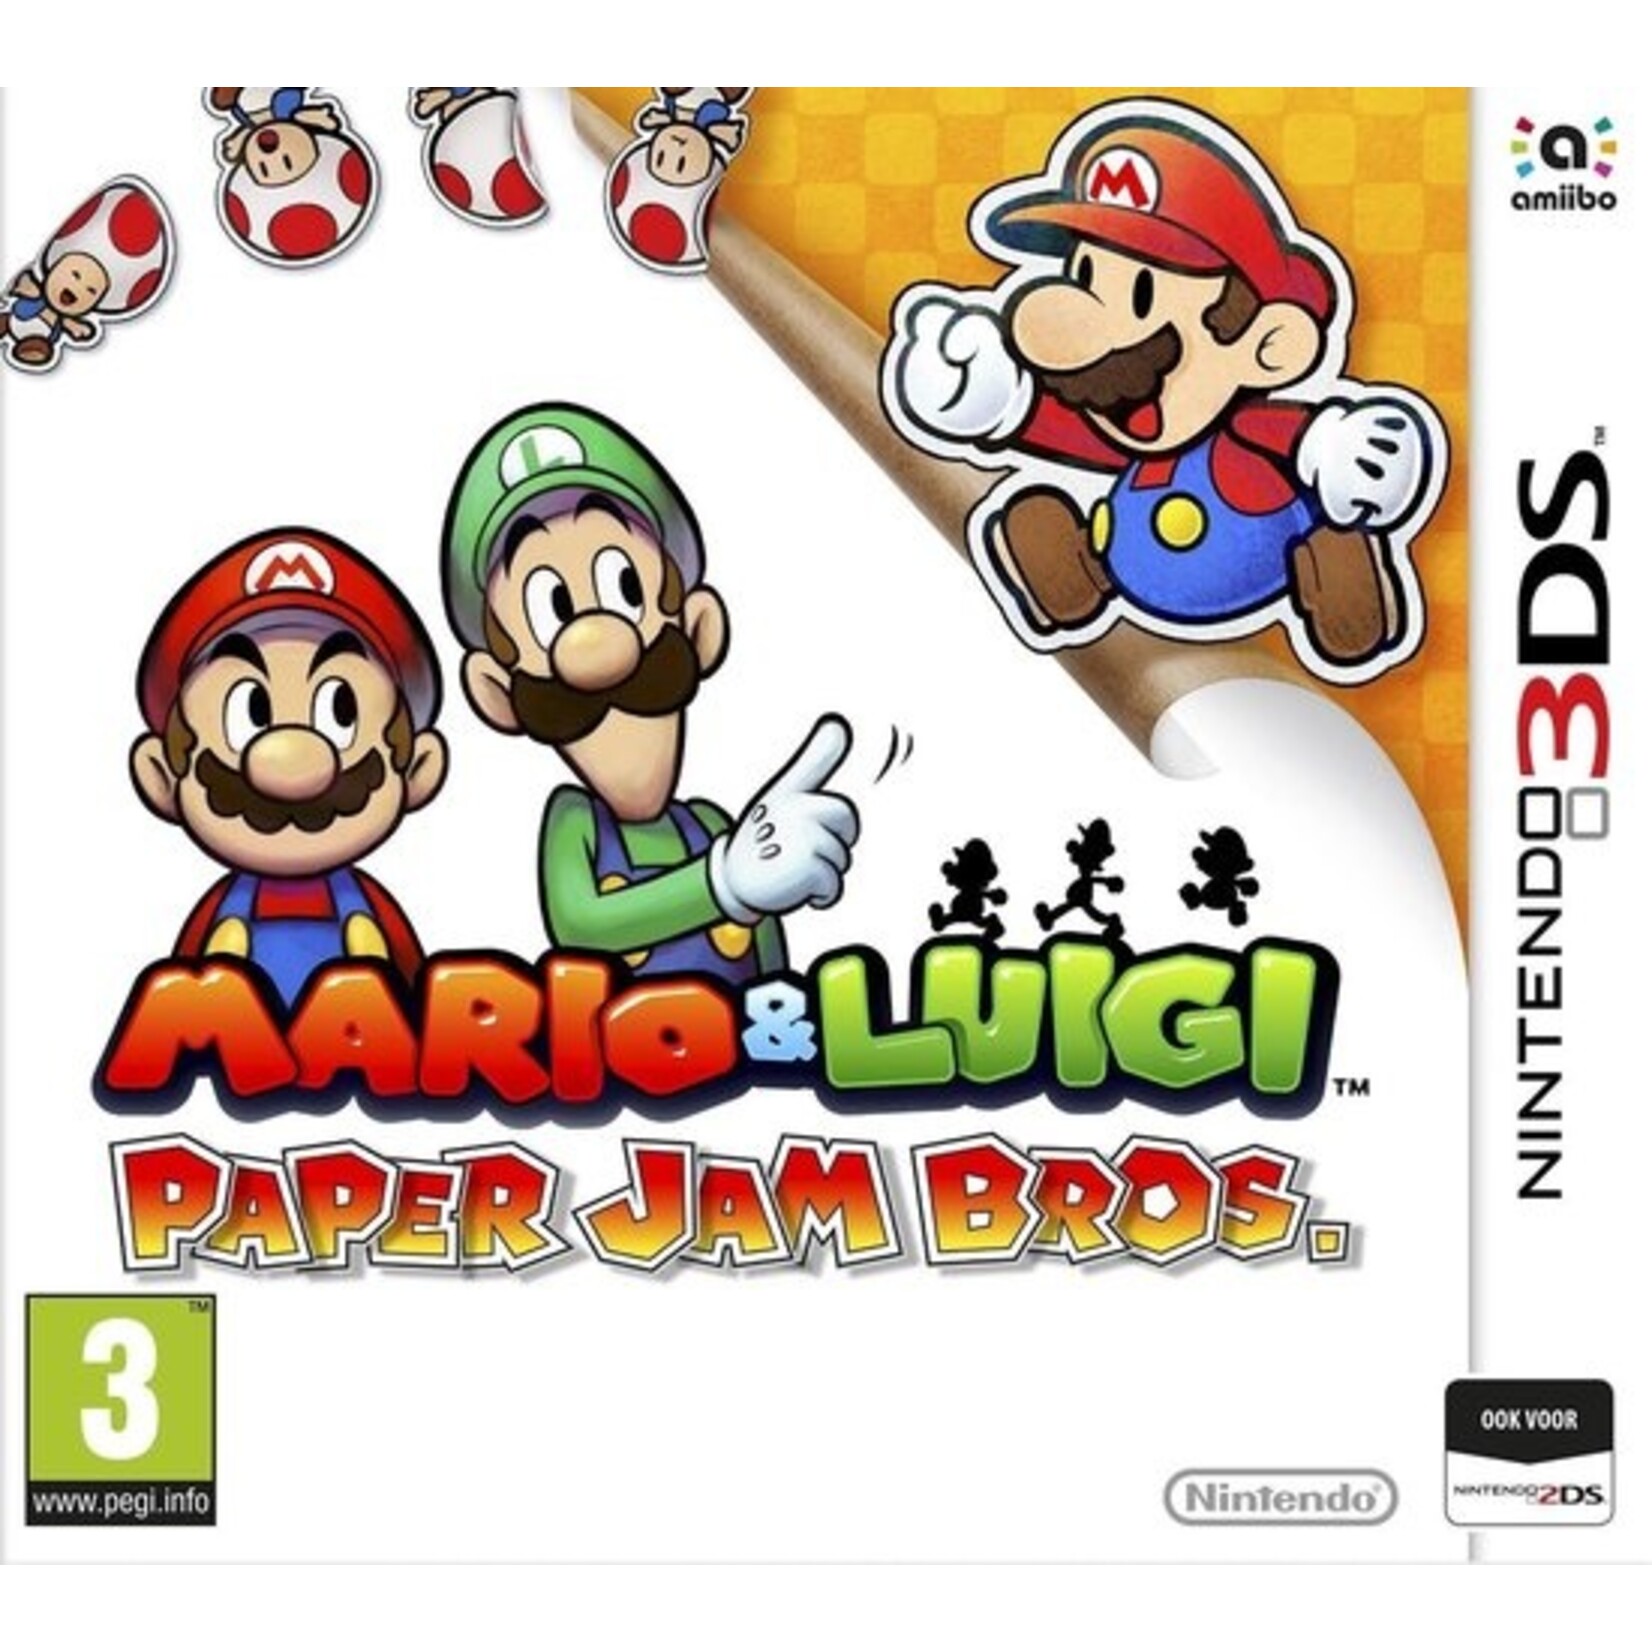 Mario & Luigi Papper Jam Bros 3DS